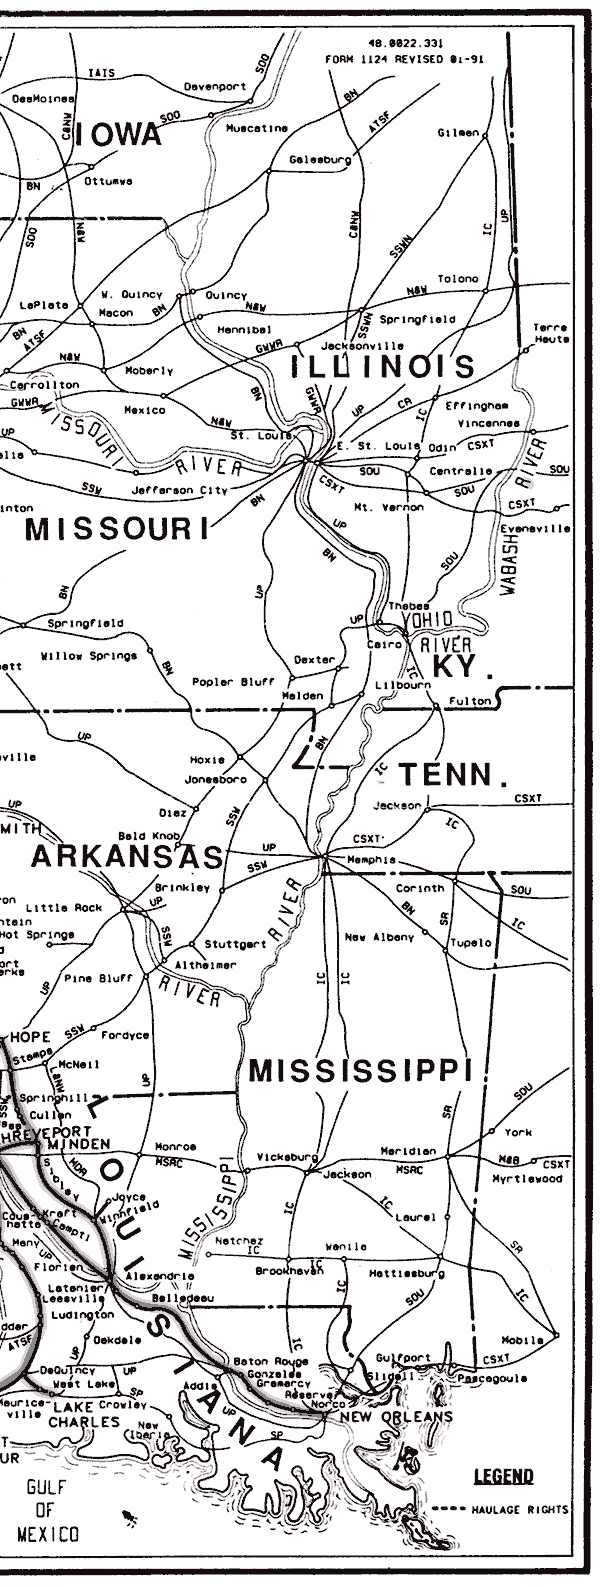 Kansas City Southern 1964 System Map